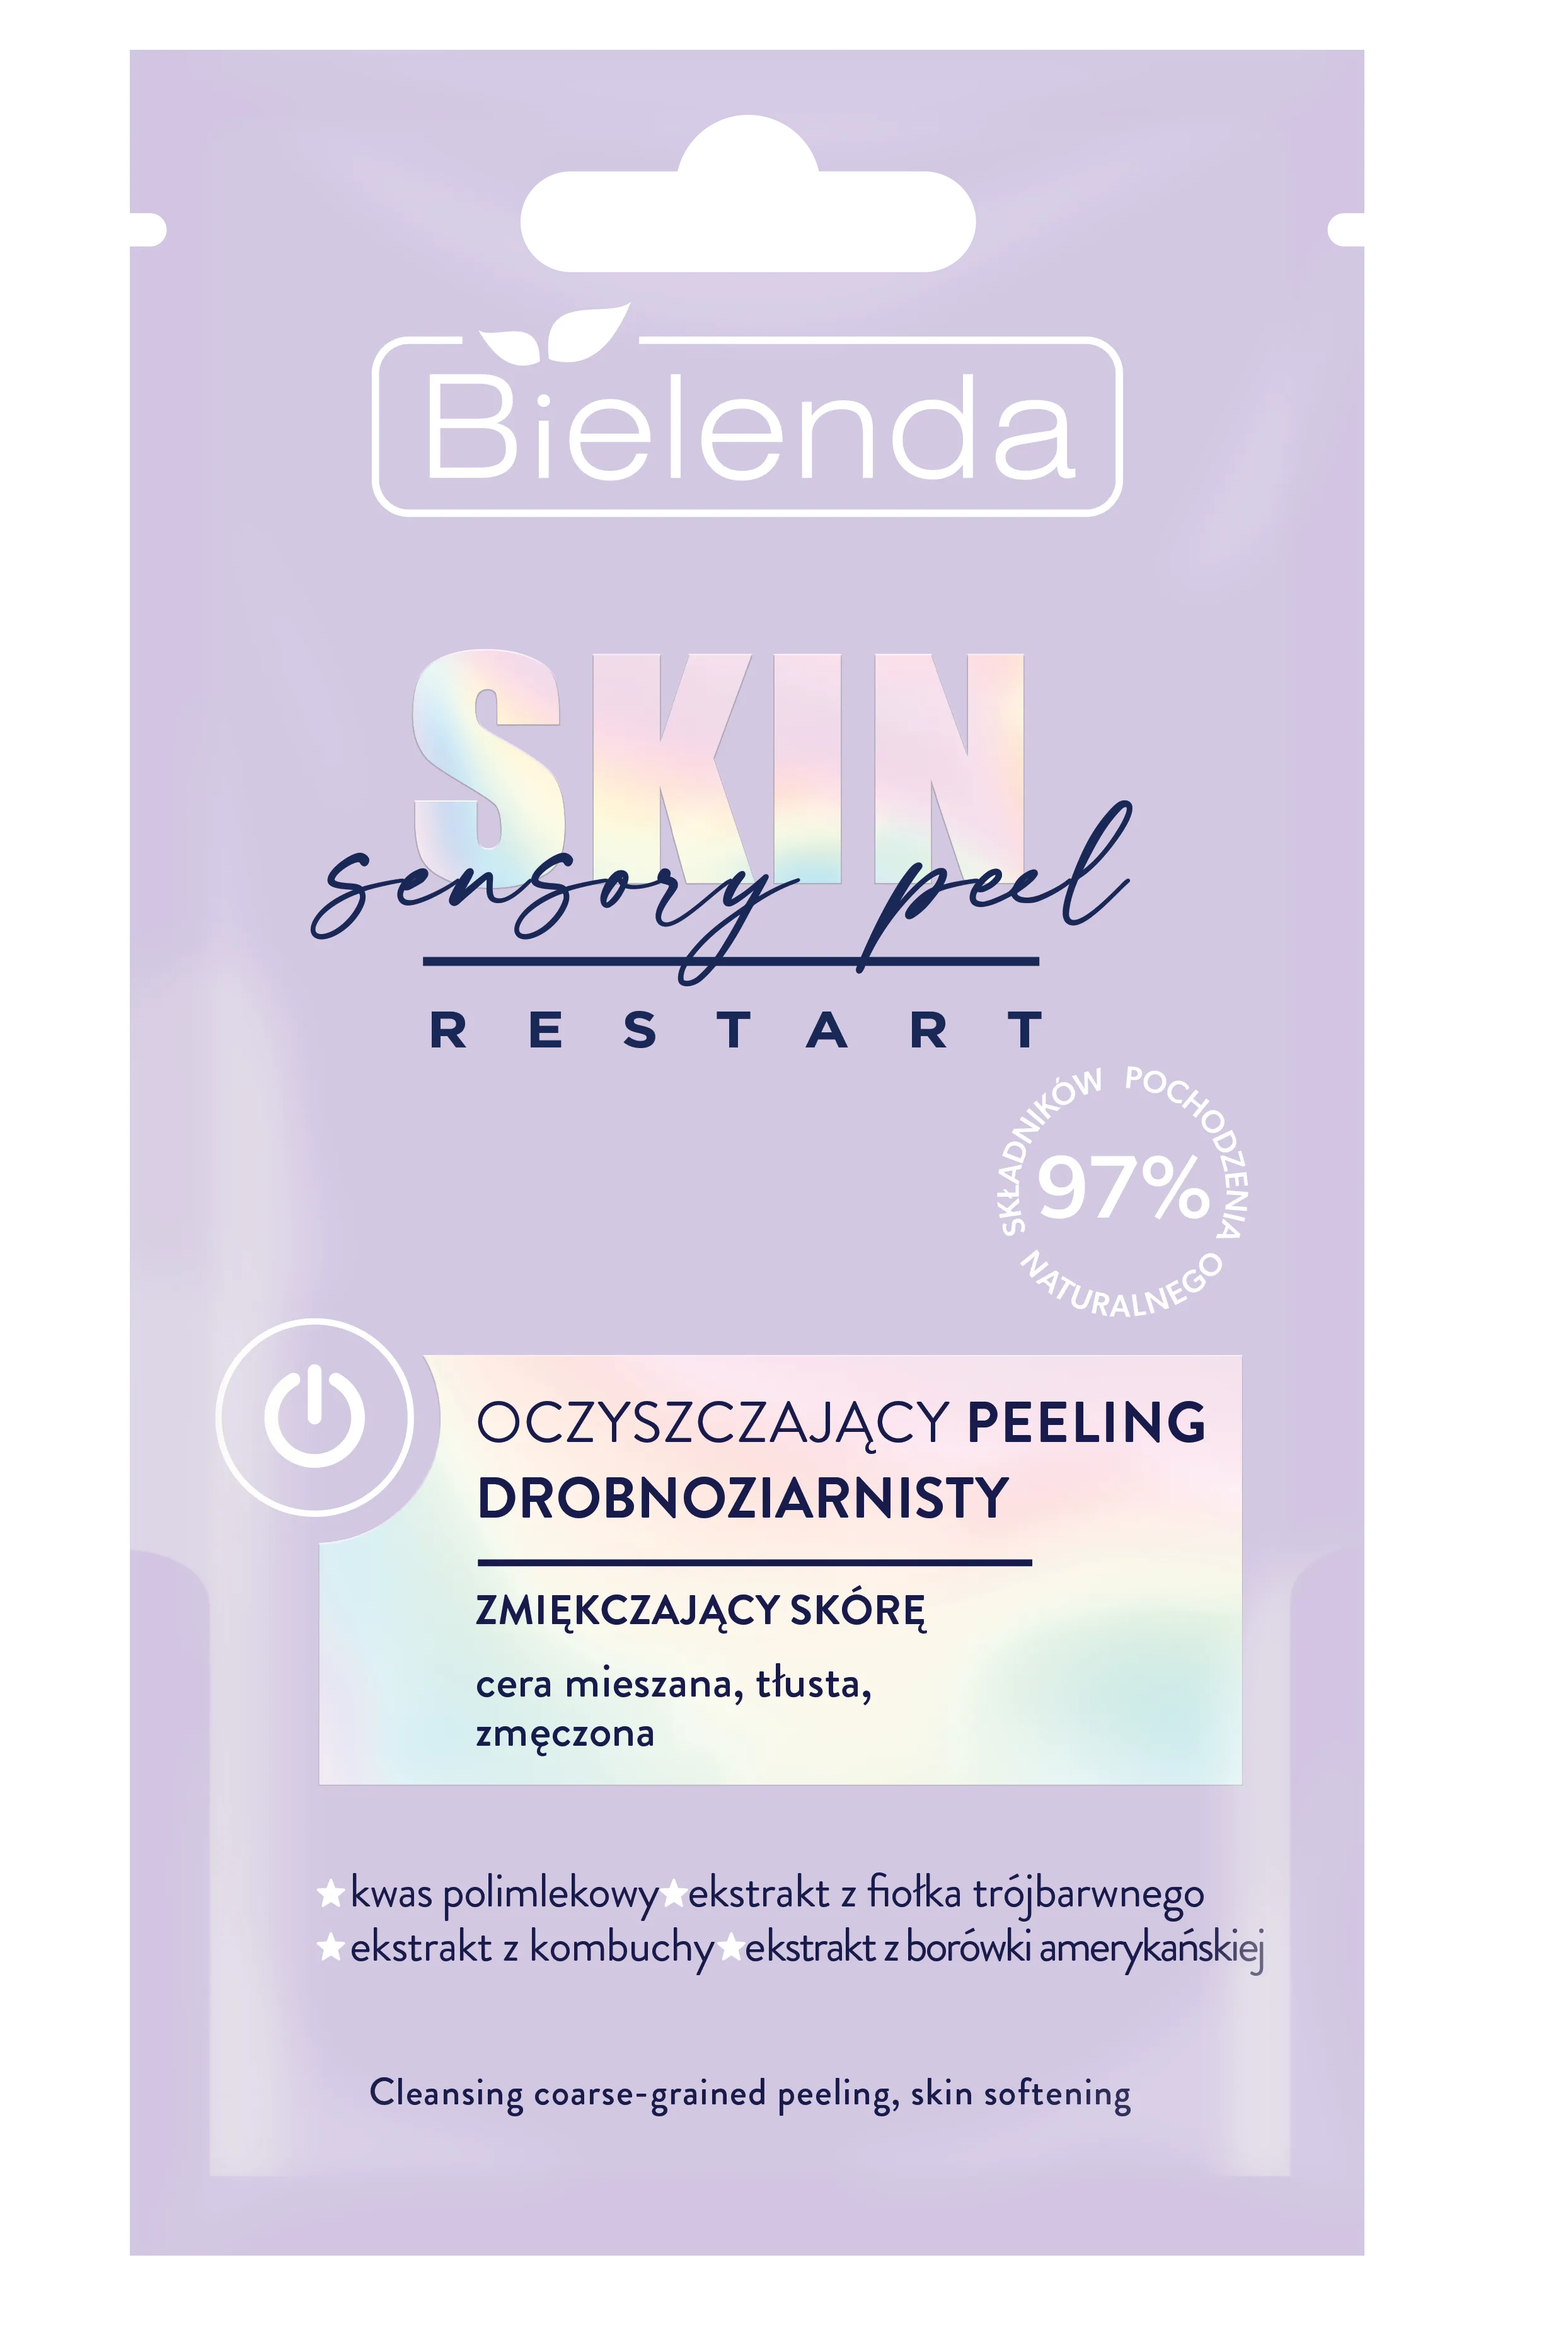 Bielenda Skin Restart Sensory Peel oczyszczający peeling drobnoziarnisty, 8 g